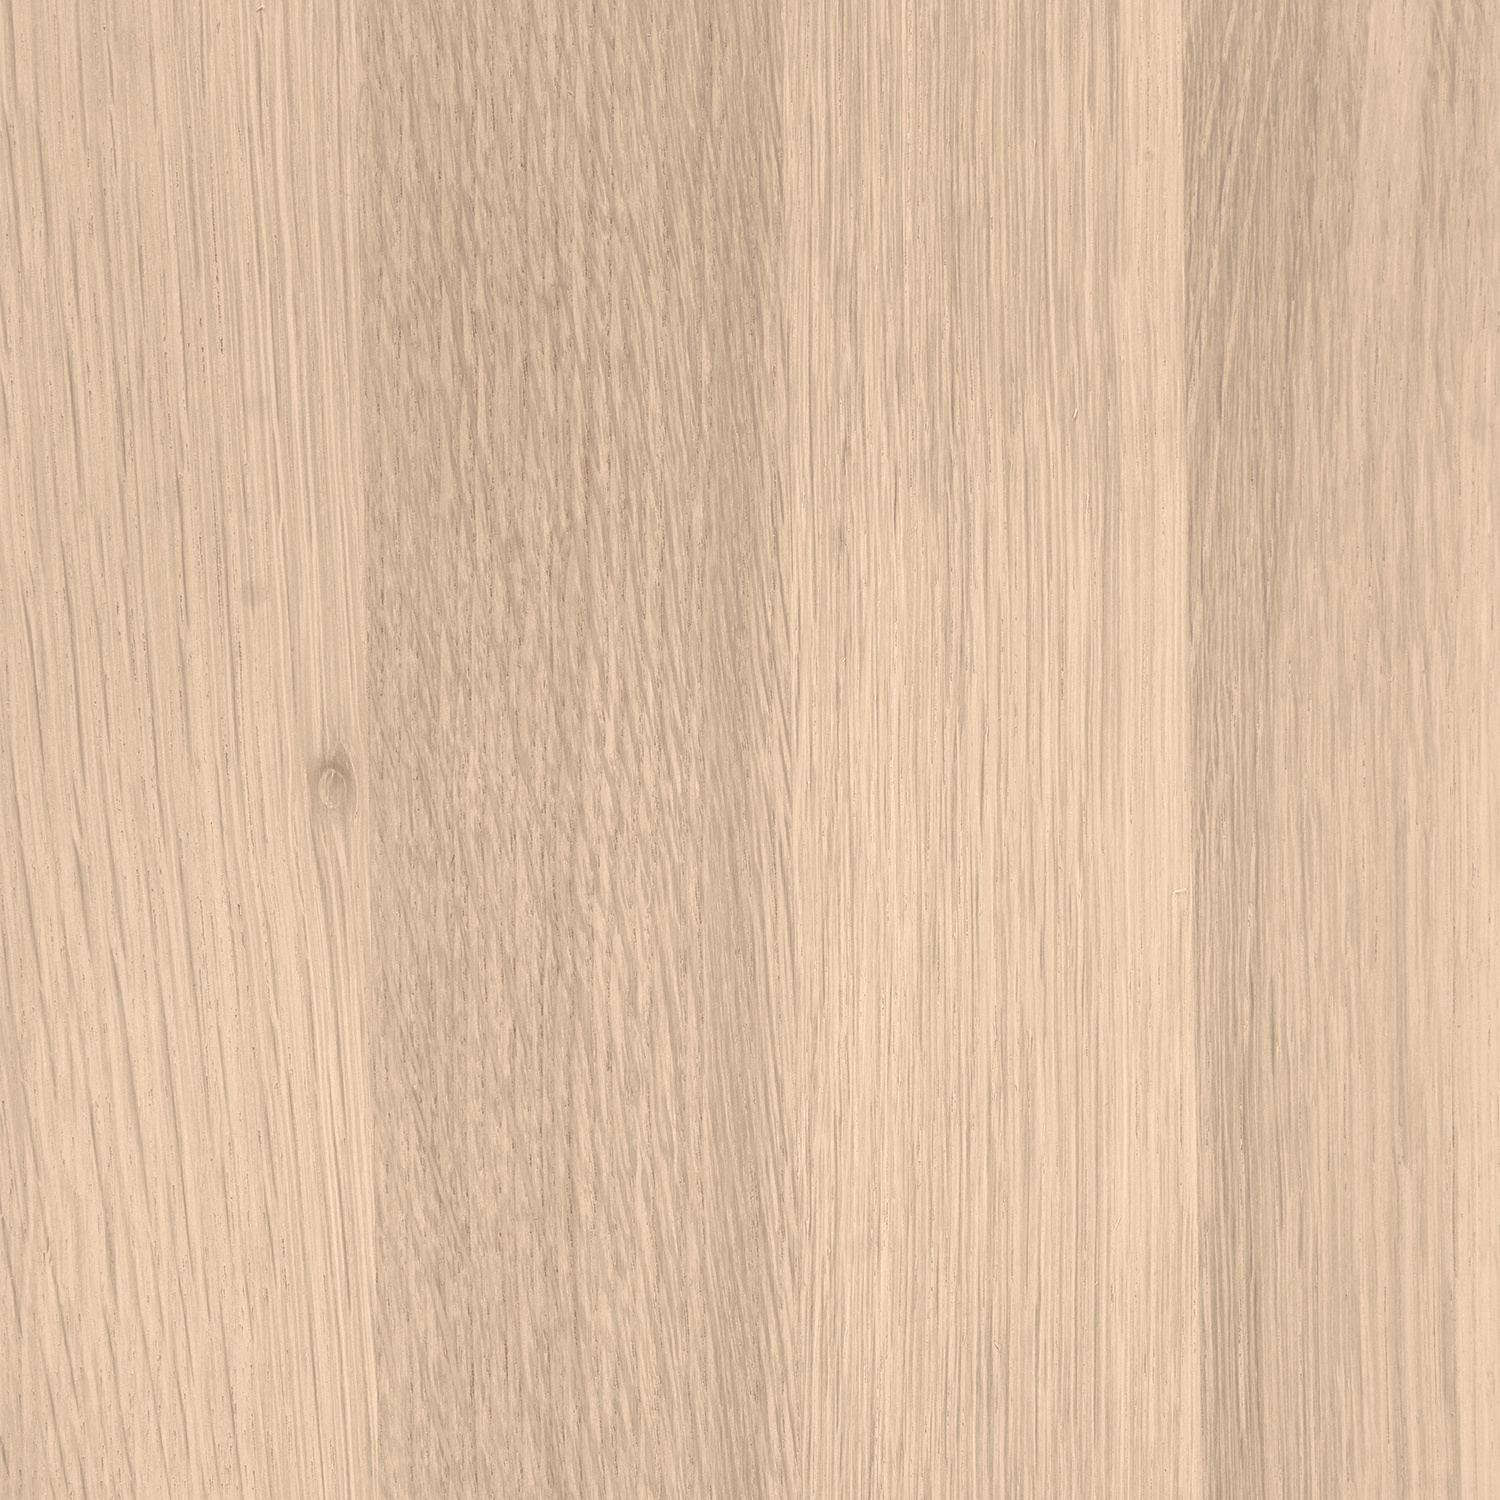  Tischplatte Eiche - Schweizer Kante - nach Maß - 4 cm dick - Eichenholz A-Qualität - Eiche Tischplatte massiv - verleimt & künstlich getrocknet (HF 8-12%) - 50-120x50-300 cm